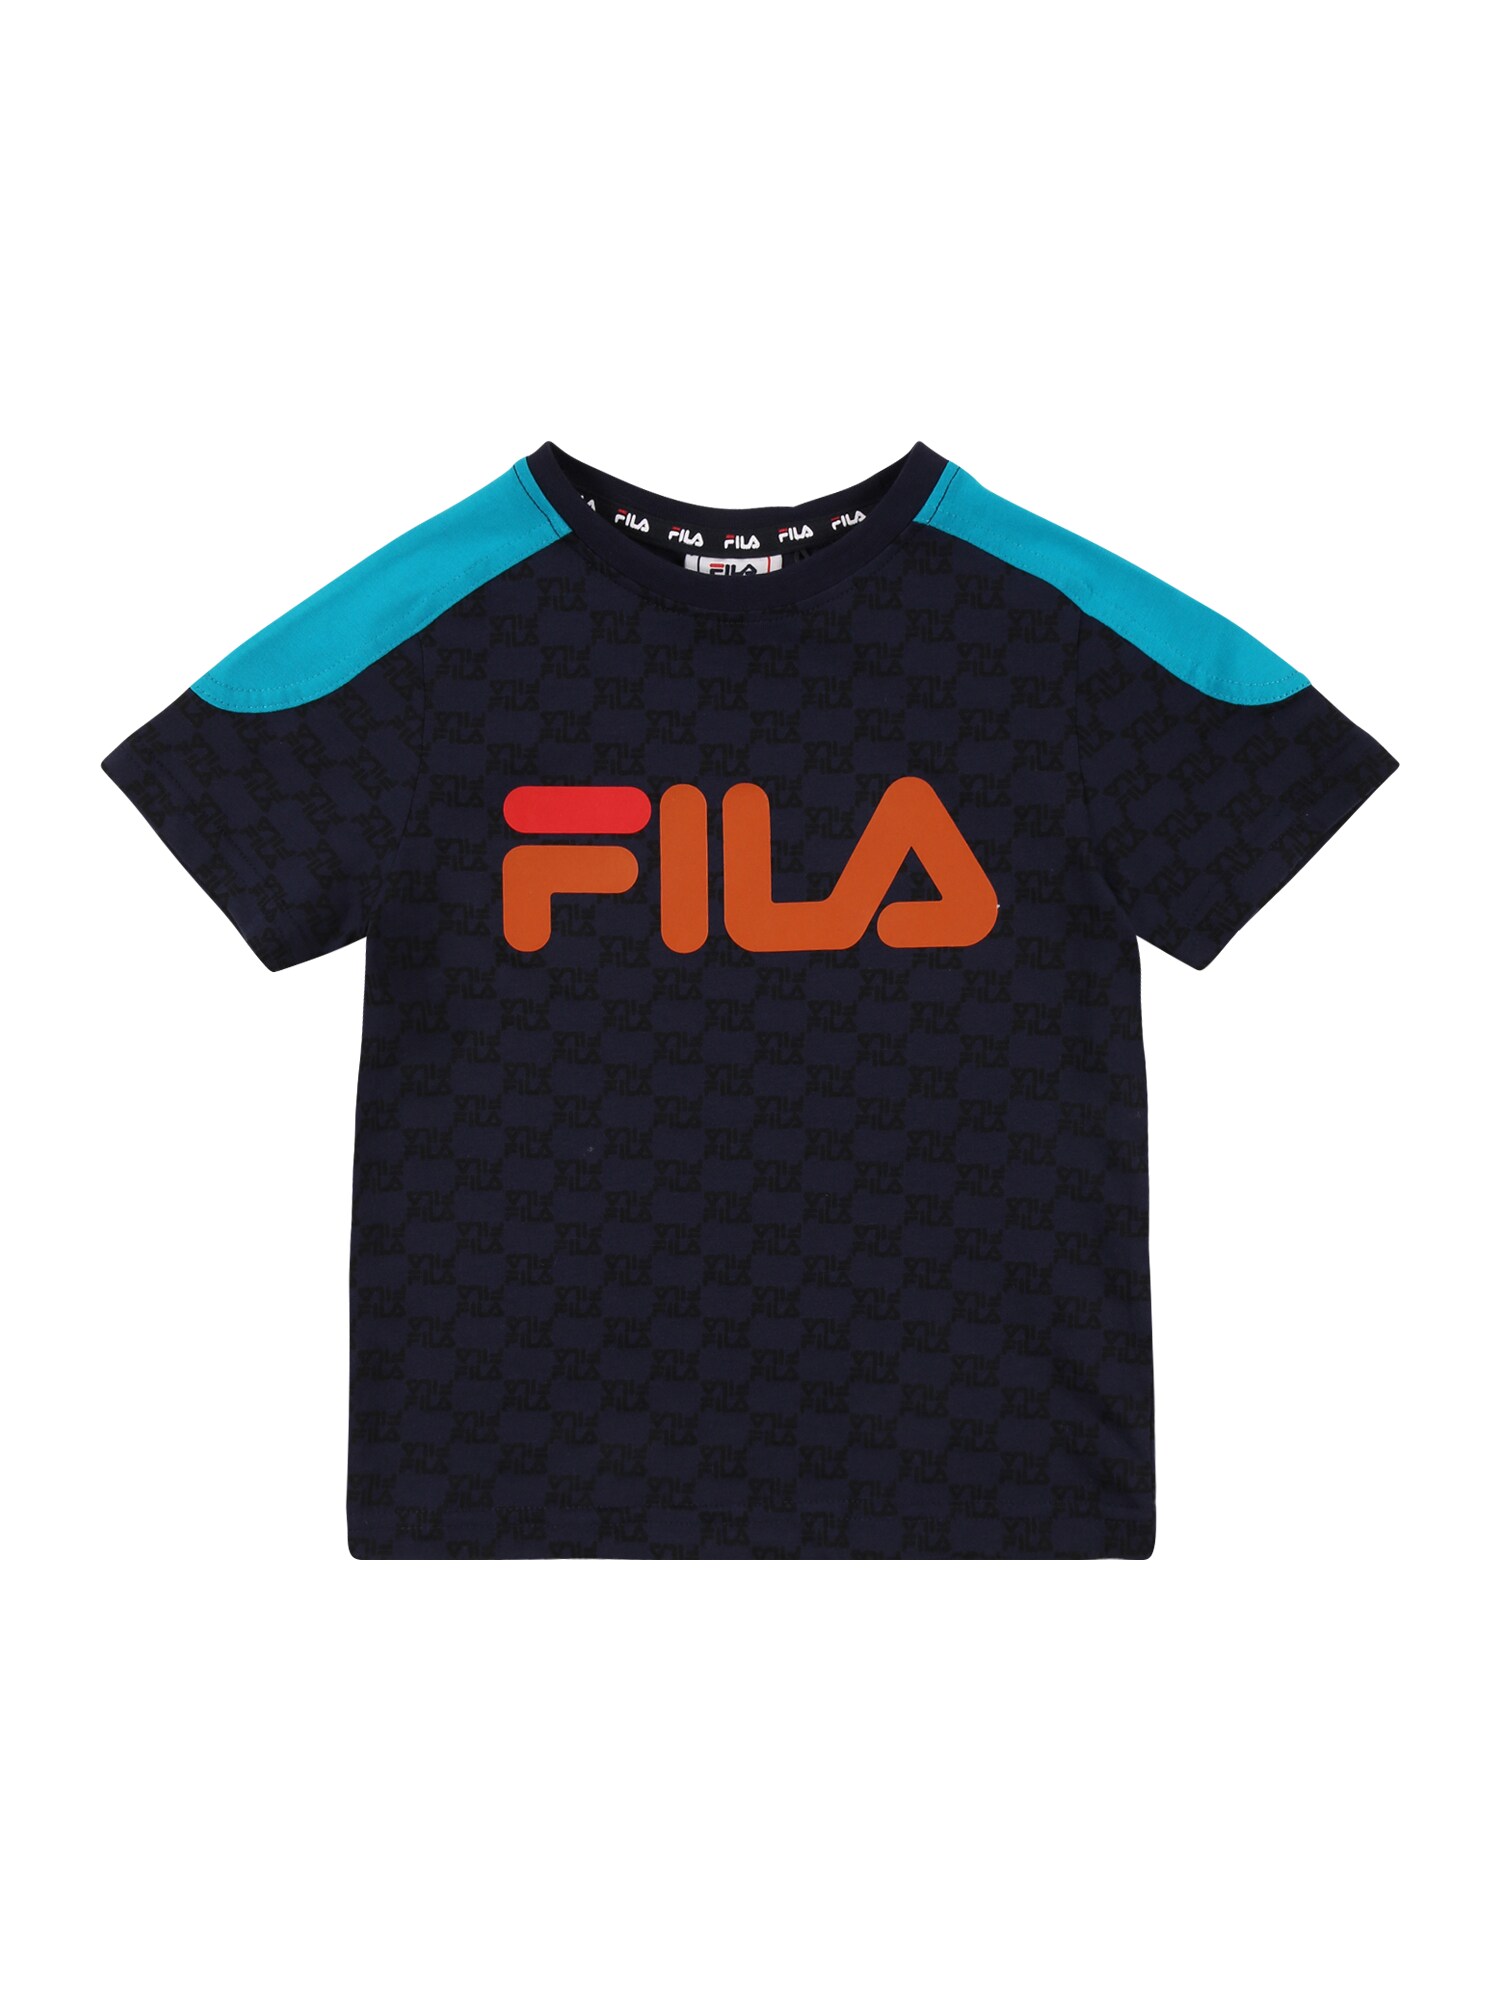 FILA Marškinėliai 'ELIA'  juoda / turkio spalva / nakties mėlyna / šviesiai oranžinė / lašišų spalva